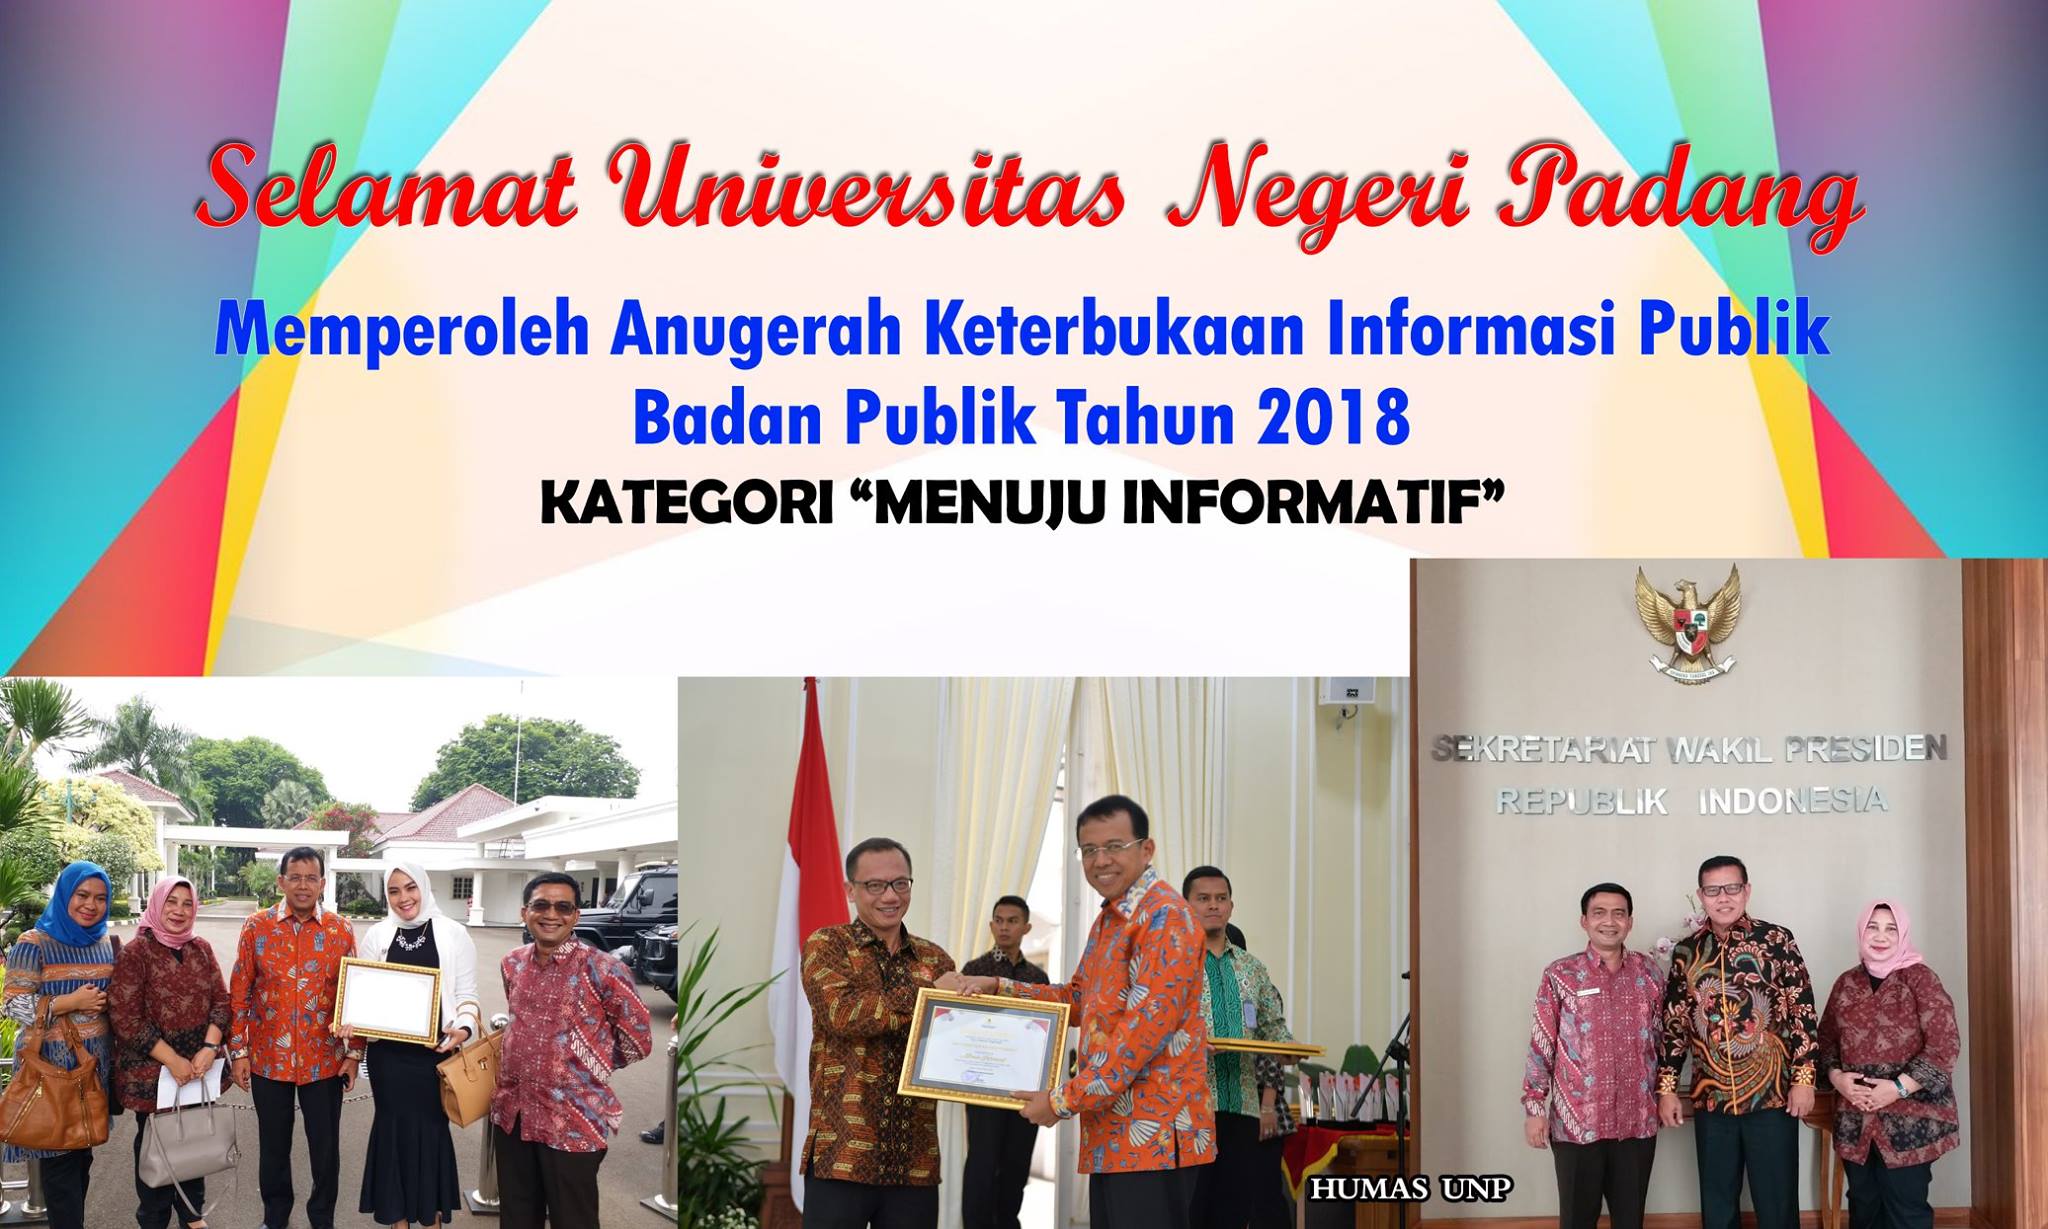 Universitas Negeri Padang Memperoleh Anugerah Keterbukaan Informasi Publik Badan Publik Tahun 2018